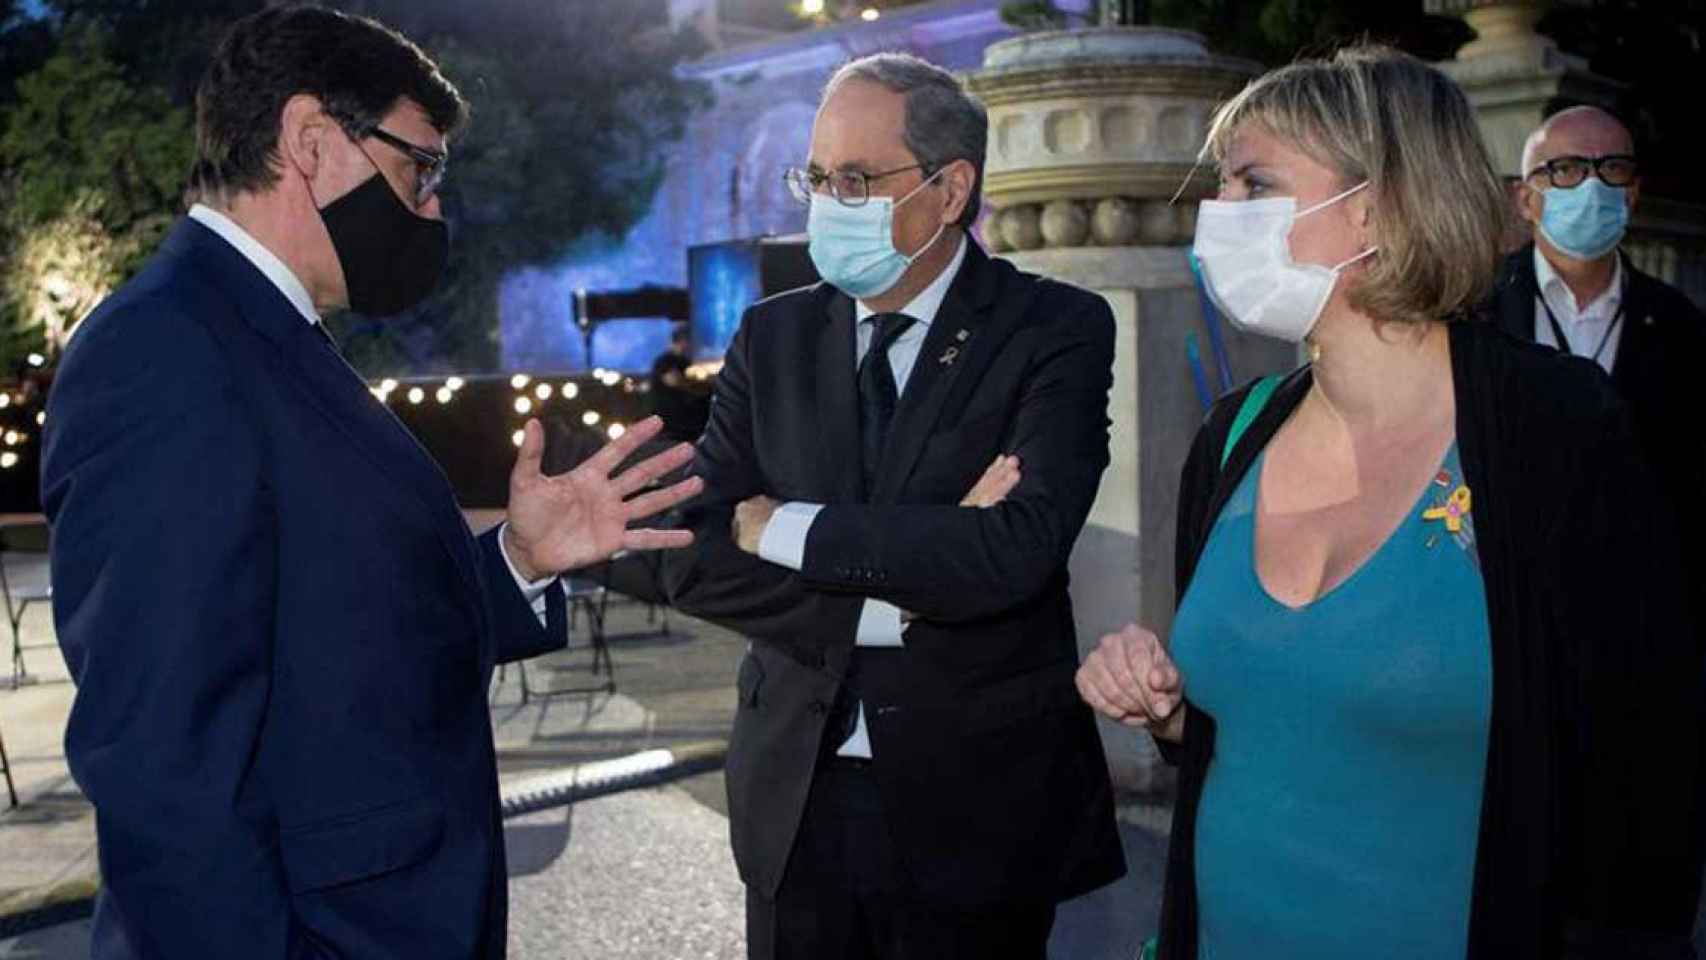 El presidente de la Generalitat, Quim Torra, y la consejera de Salud, Alba Vergés, hablando con el ministro de Sanidad Salvador Illa en el homenaje a las víctimas del coronavirus en Barcelona / EFE